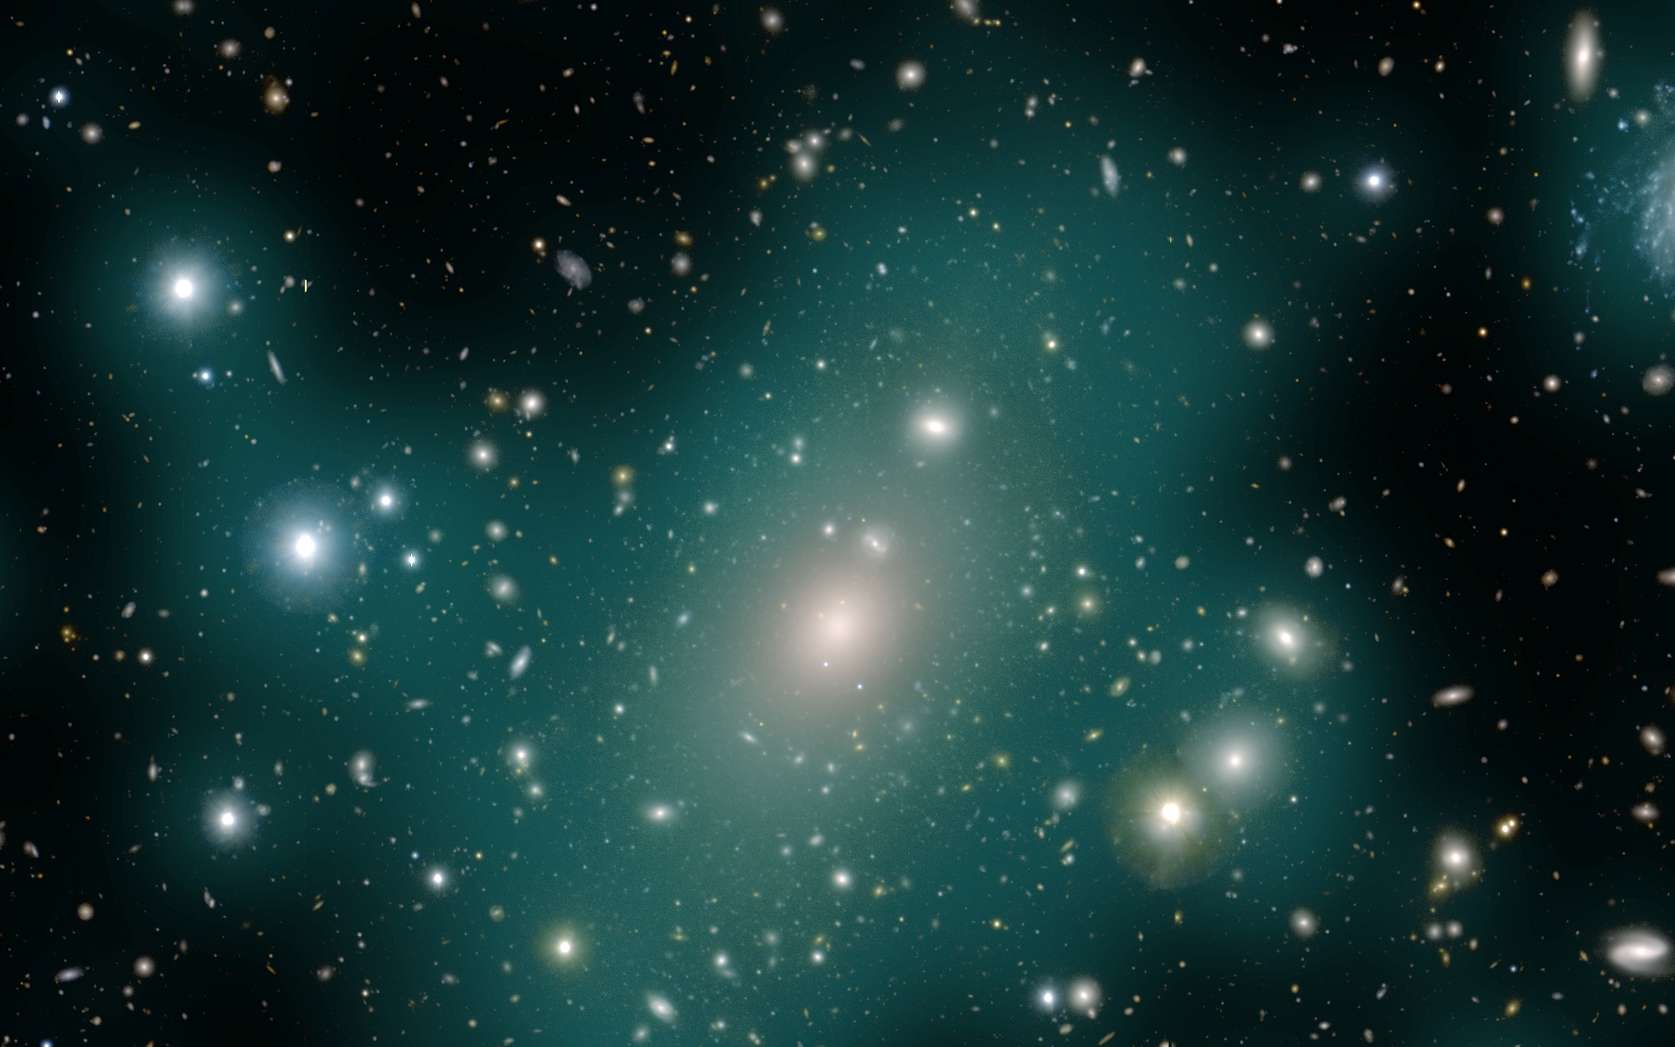 Les étoiles errant entre les galaxies bientôt révélées par le télescope Vera Rubin !